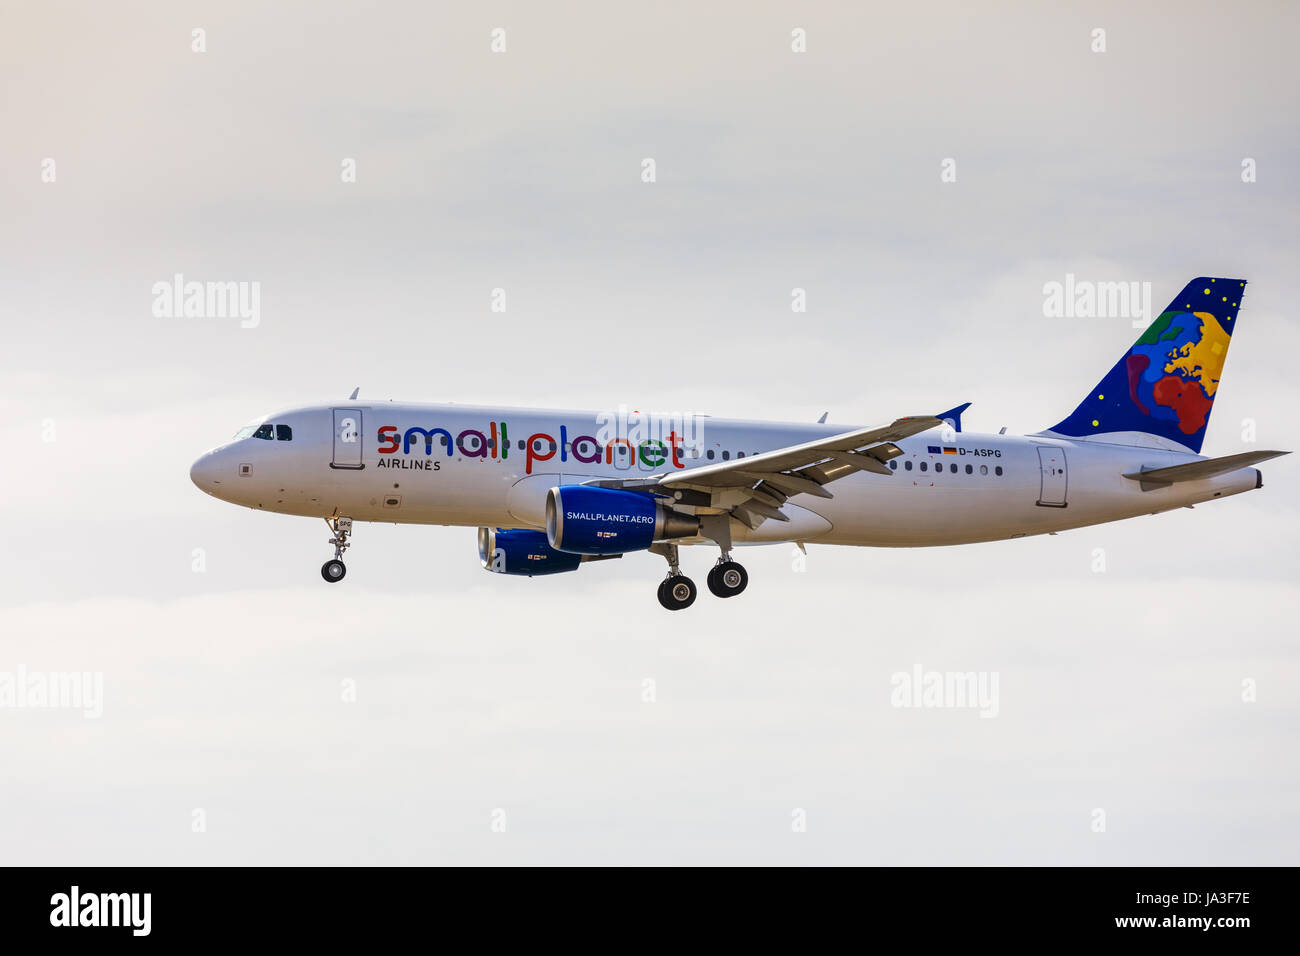 ARECIFE, Spagna - Aprile 15 2017: Airbus A320 del piccolo pianeta con la registrazione D-ASPG in atterraggio a Lanzarote Airport Foto Stock